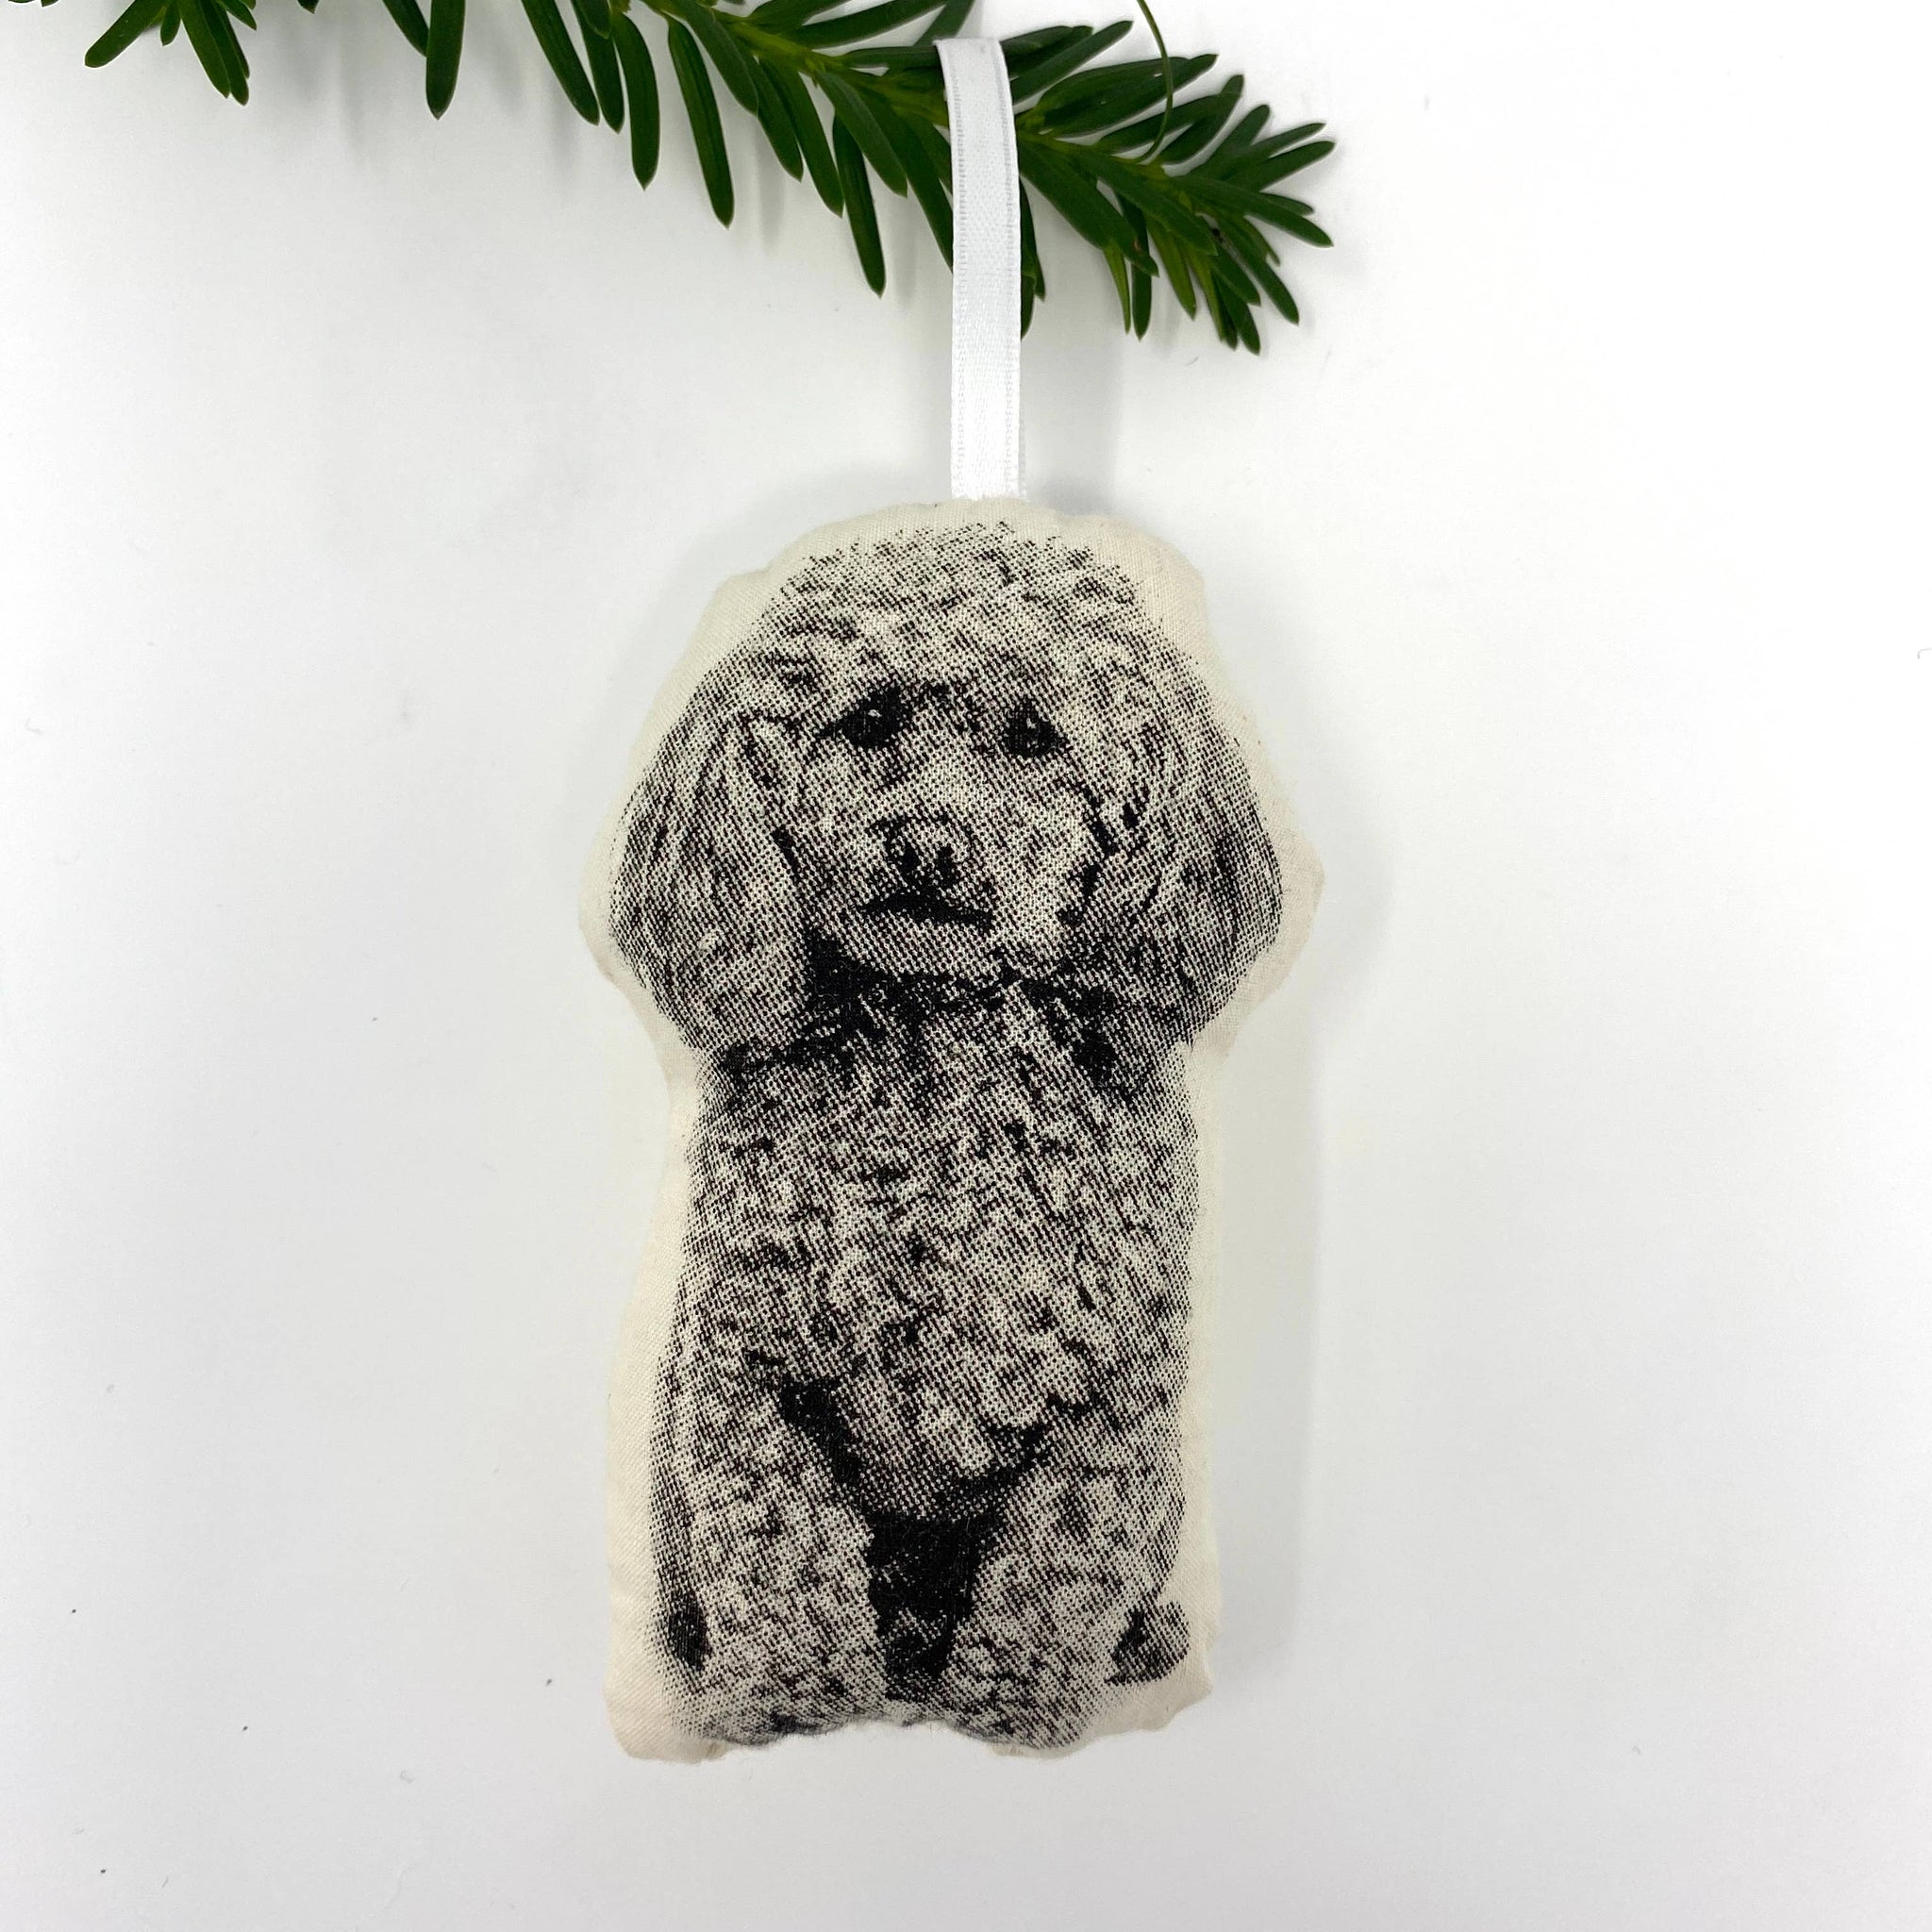 Poodle Ornament